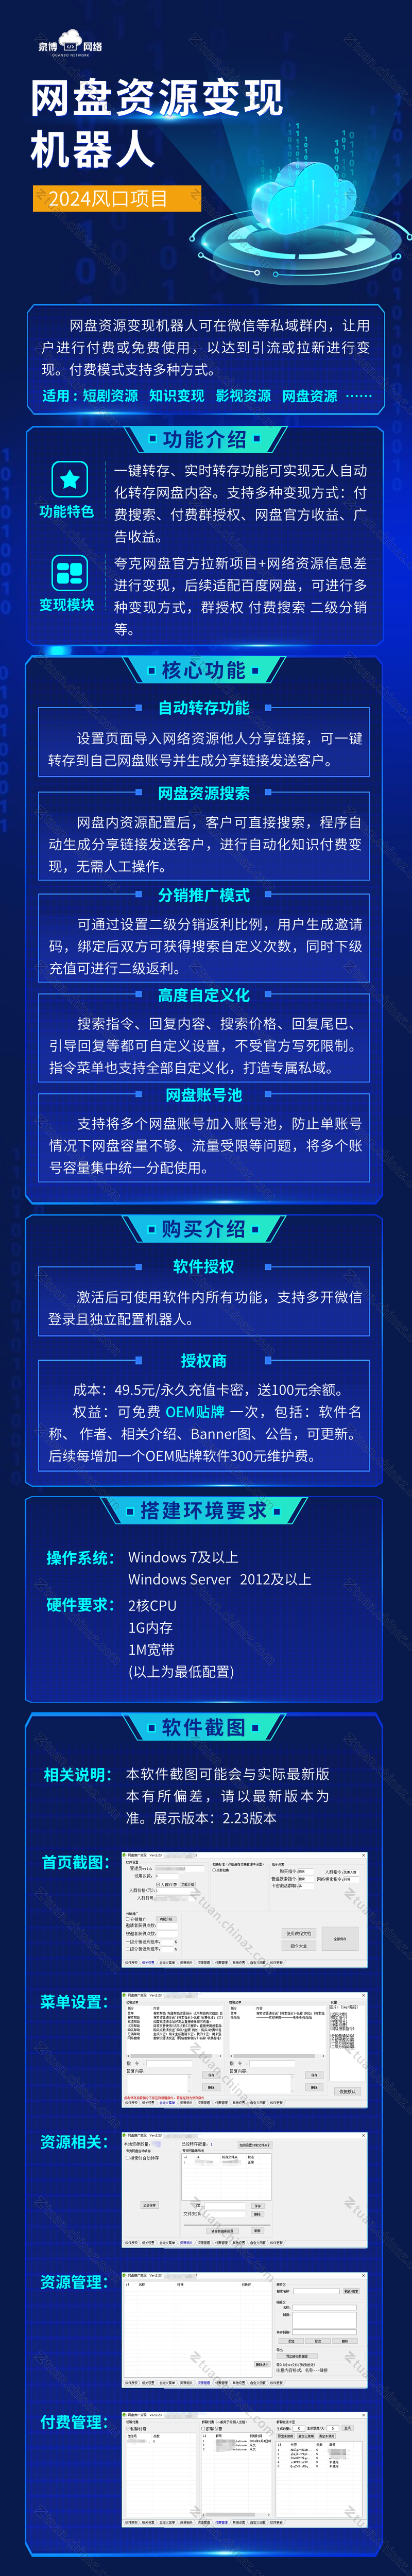 it互联网数字平台服务介绍长图海报(2).png